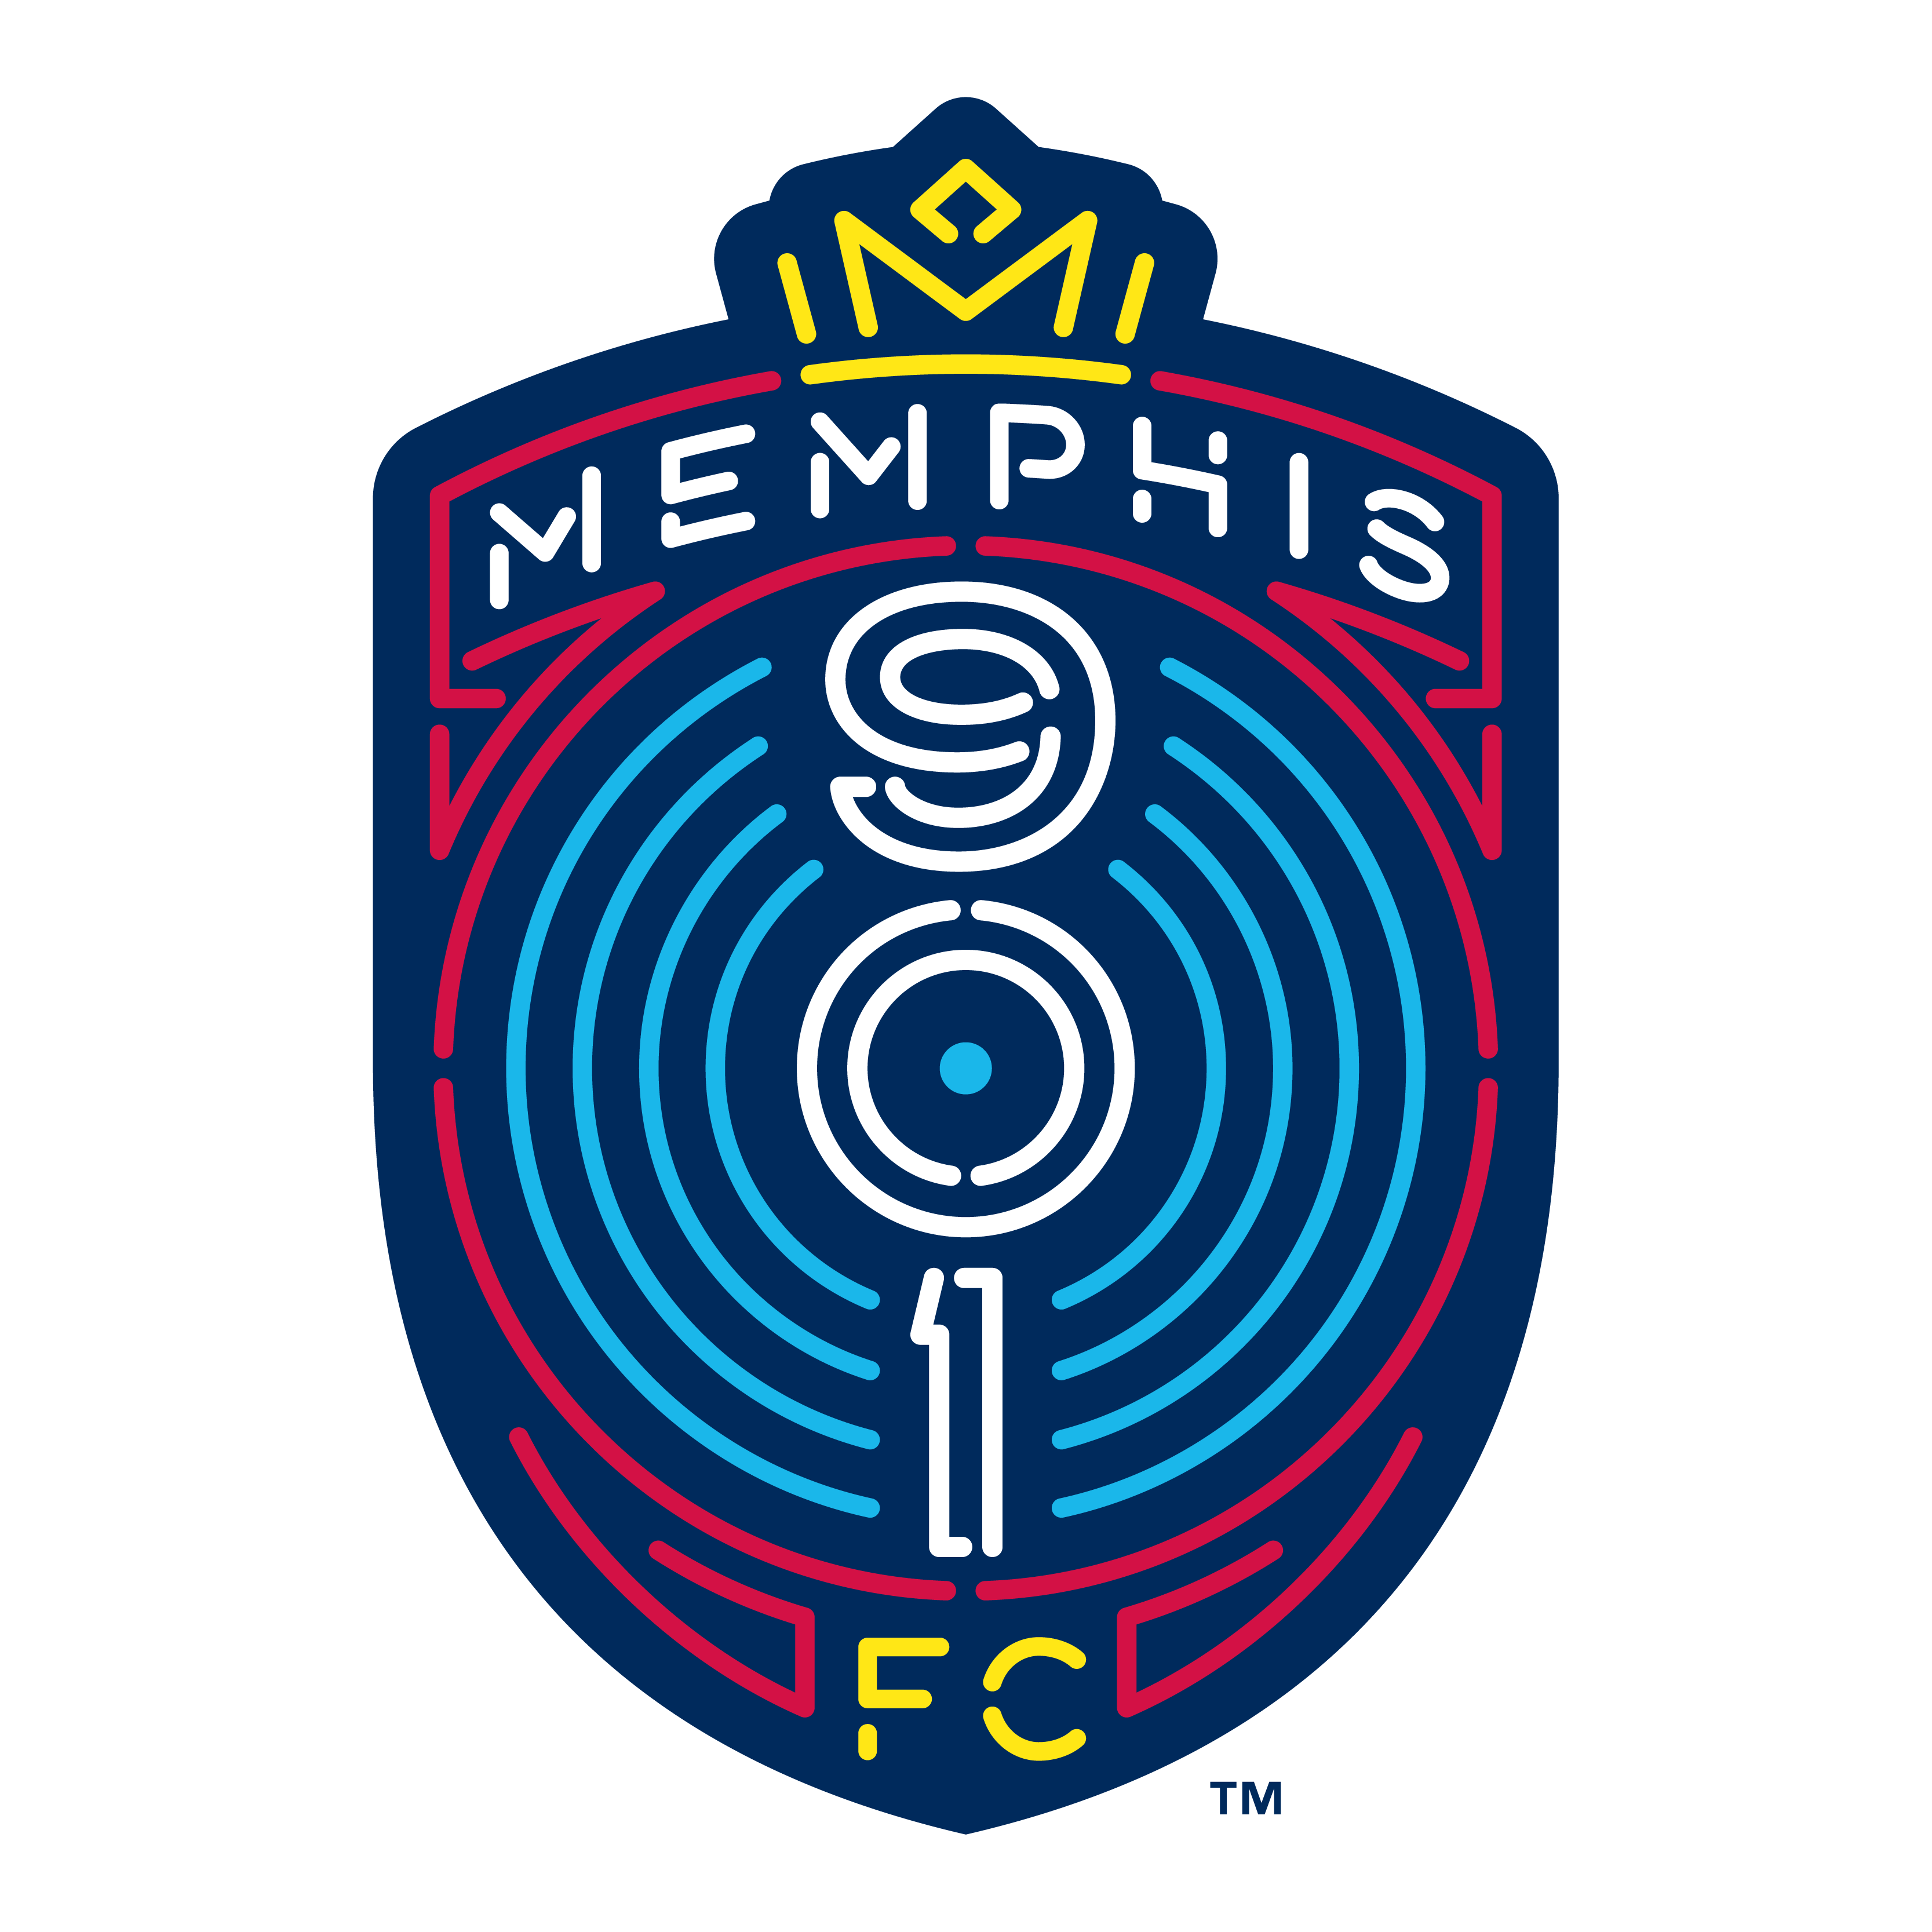 Memphis 901 FC Logo